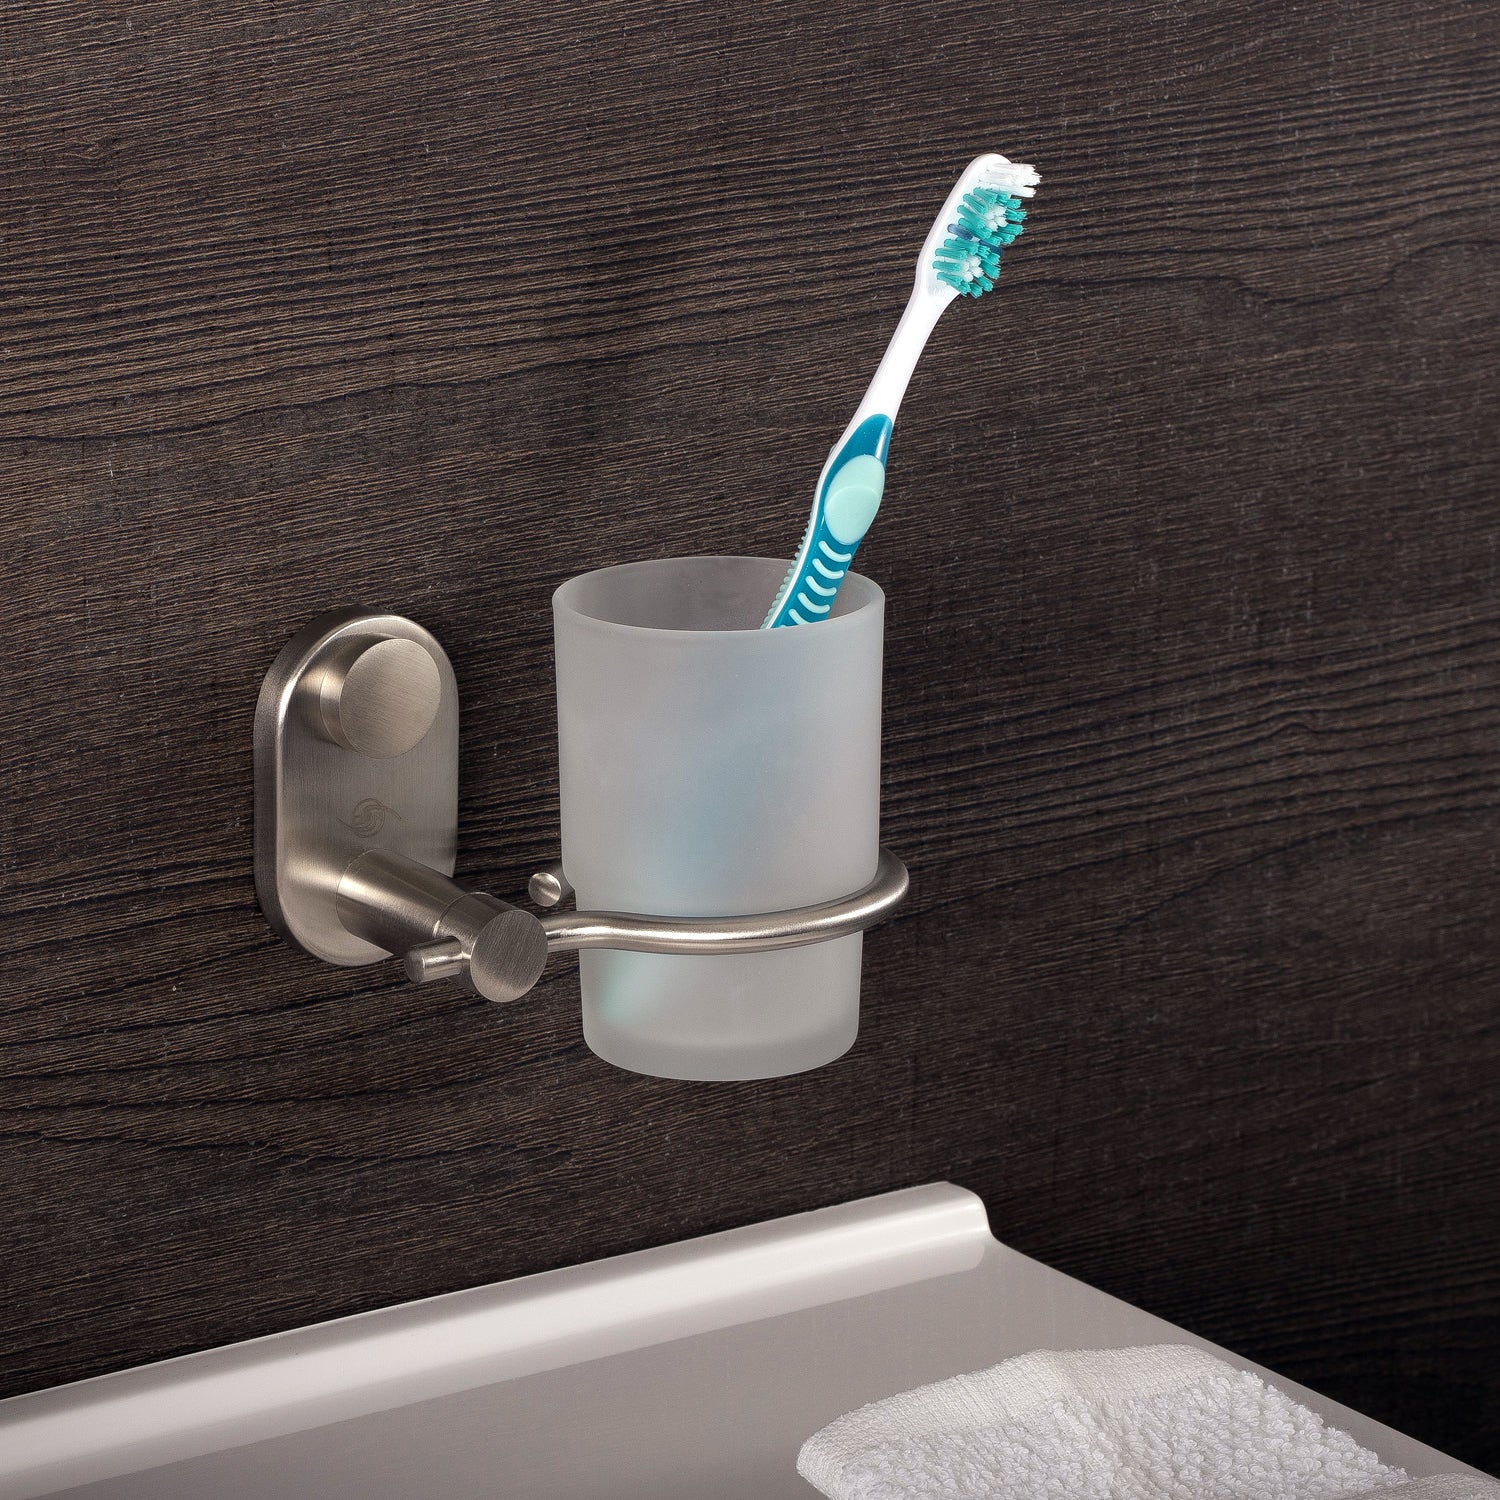 DAX - Soporte para cepillo de dientes de vaso individual para baño, acero inoxidable con vaso de vidrio, acabado pulido, 4-5/16 x 3-3/4 x 4-1/8 pulgadas (DAX-G0206-P) 